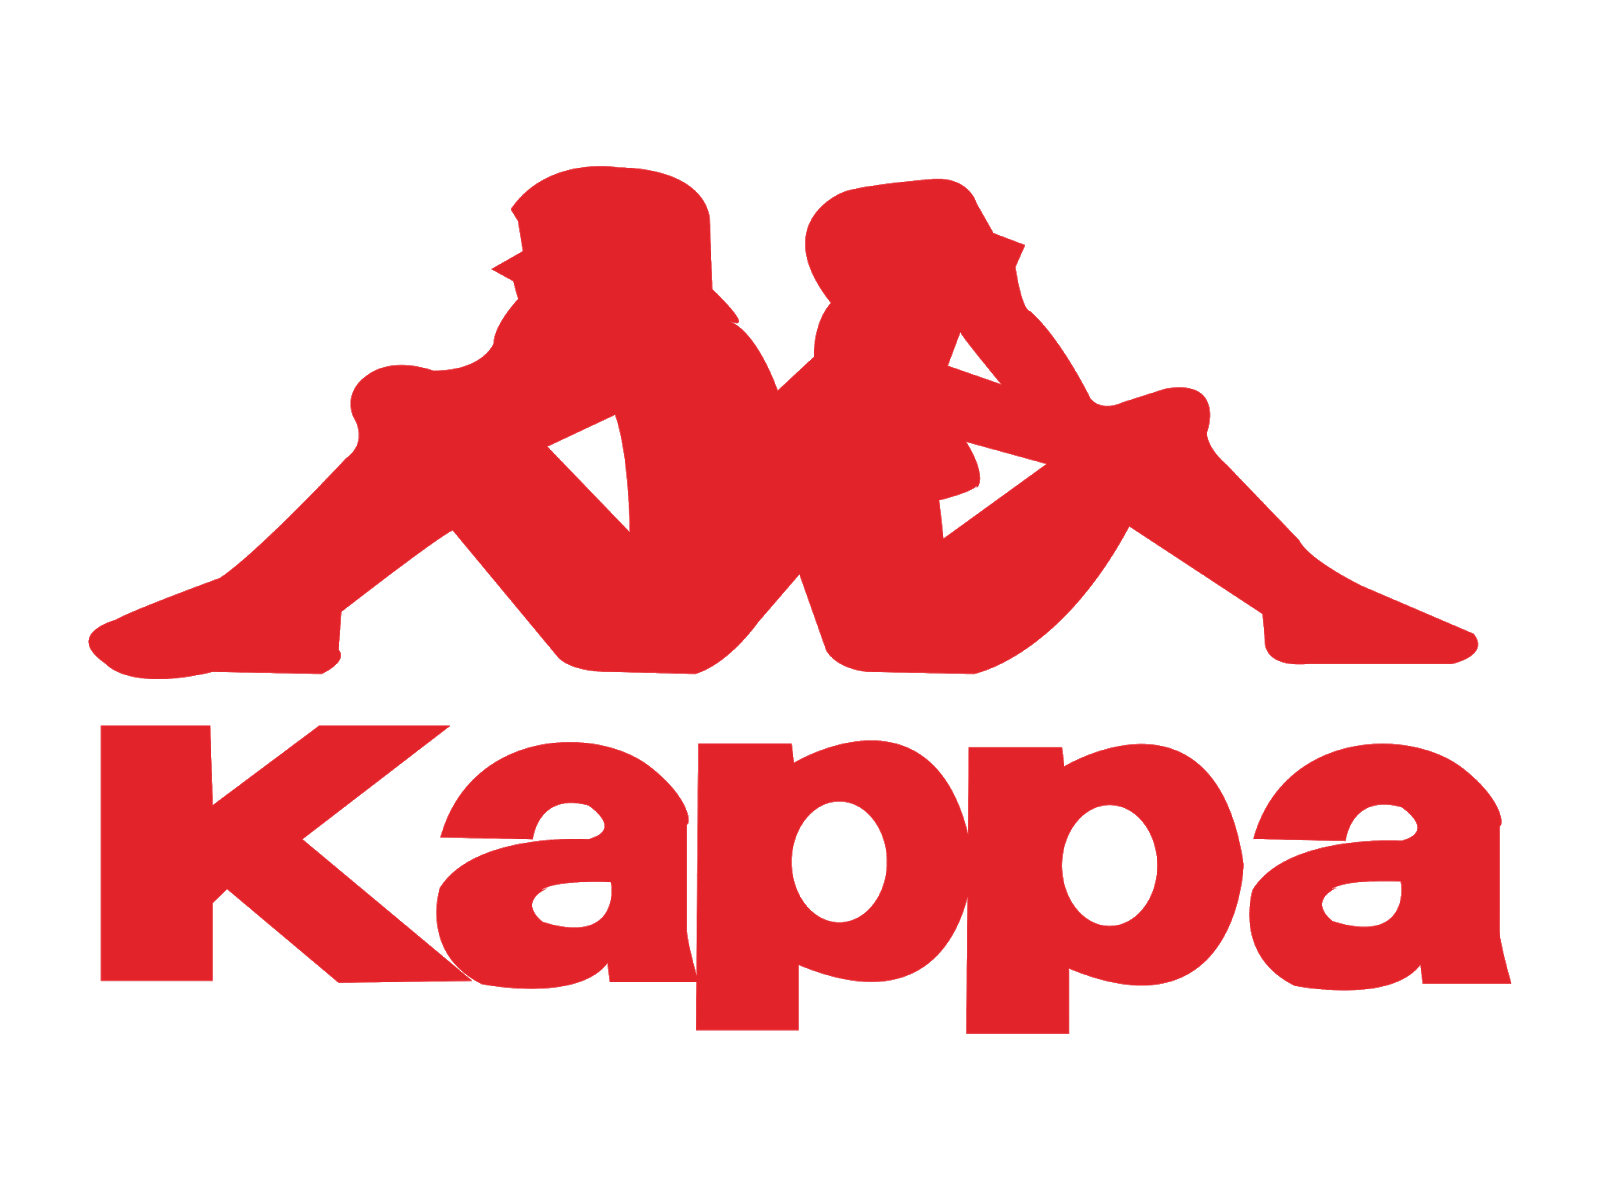 Спортивные лейблы. Kappa одежда logo. Логотип спортивной одежды. Спортивный бренд Каппа.